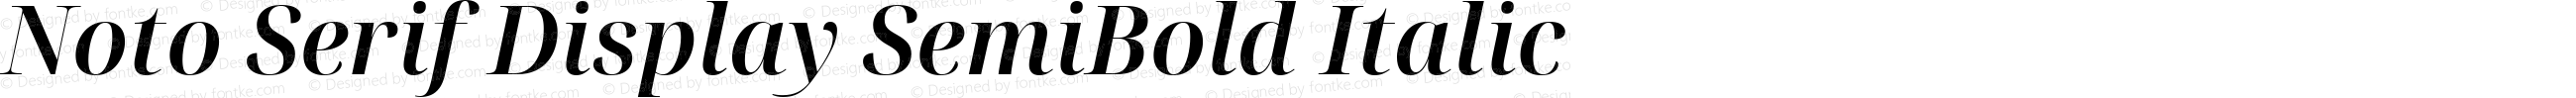 Noto Serif Display SemiBold Italic